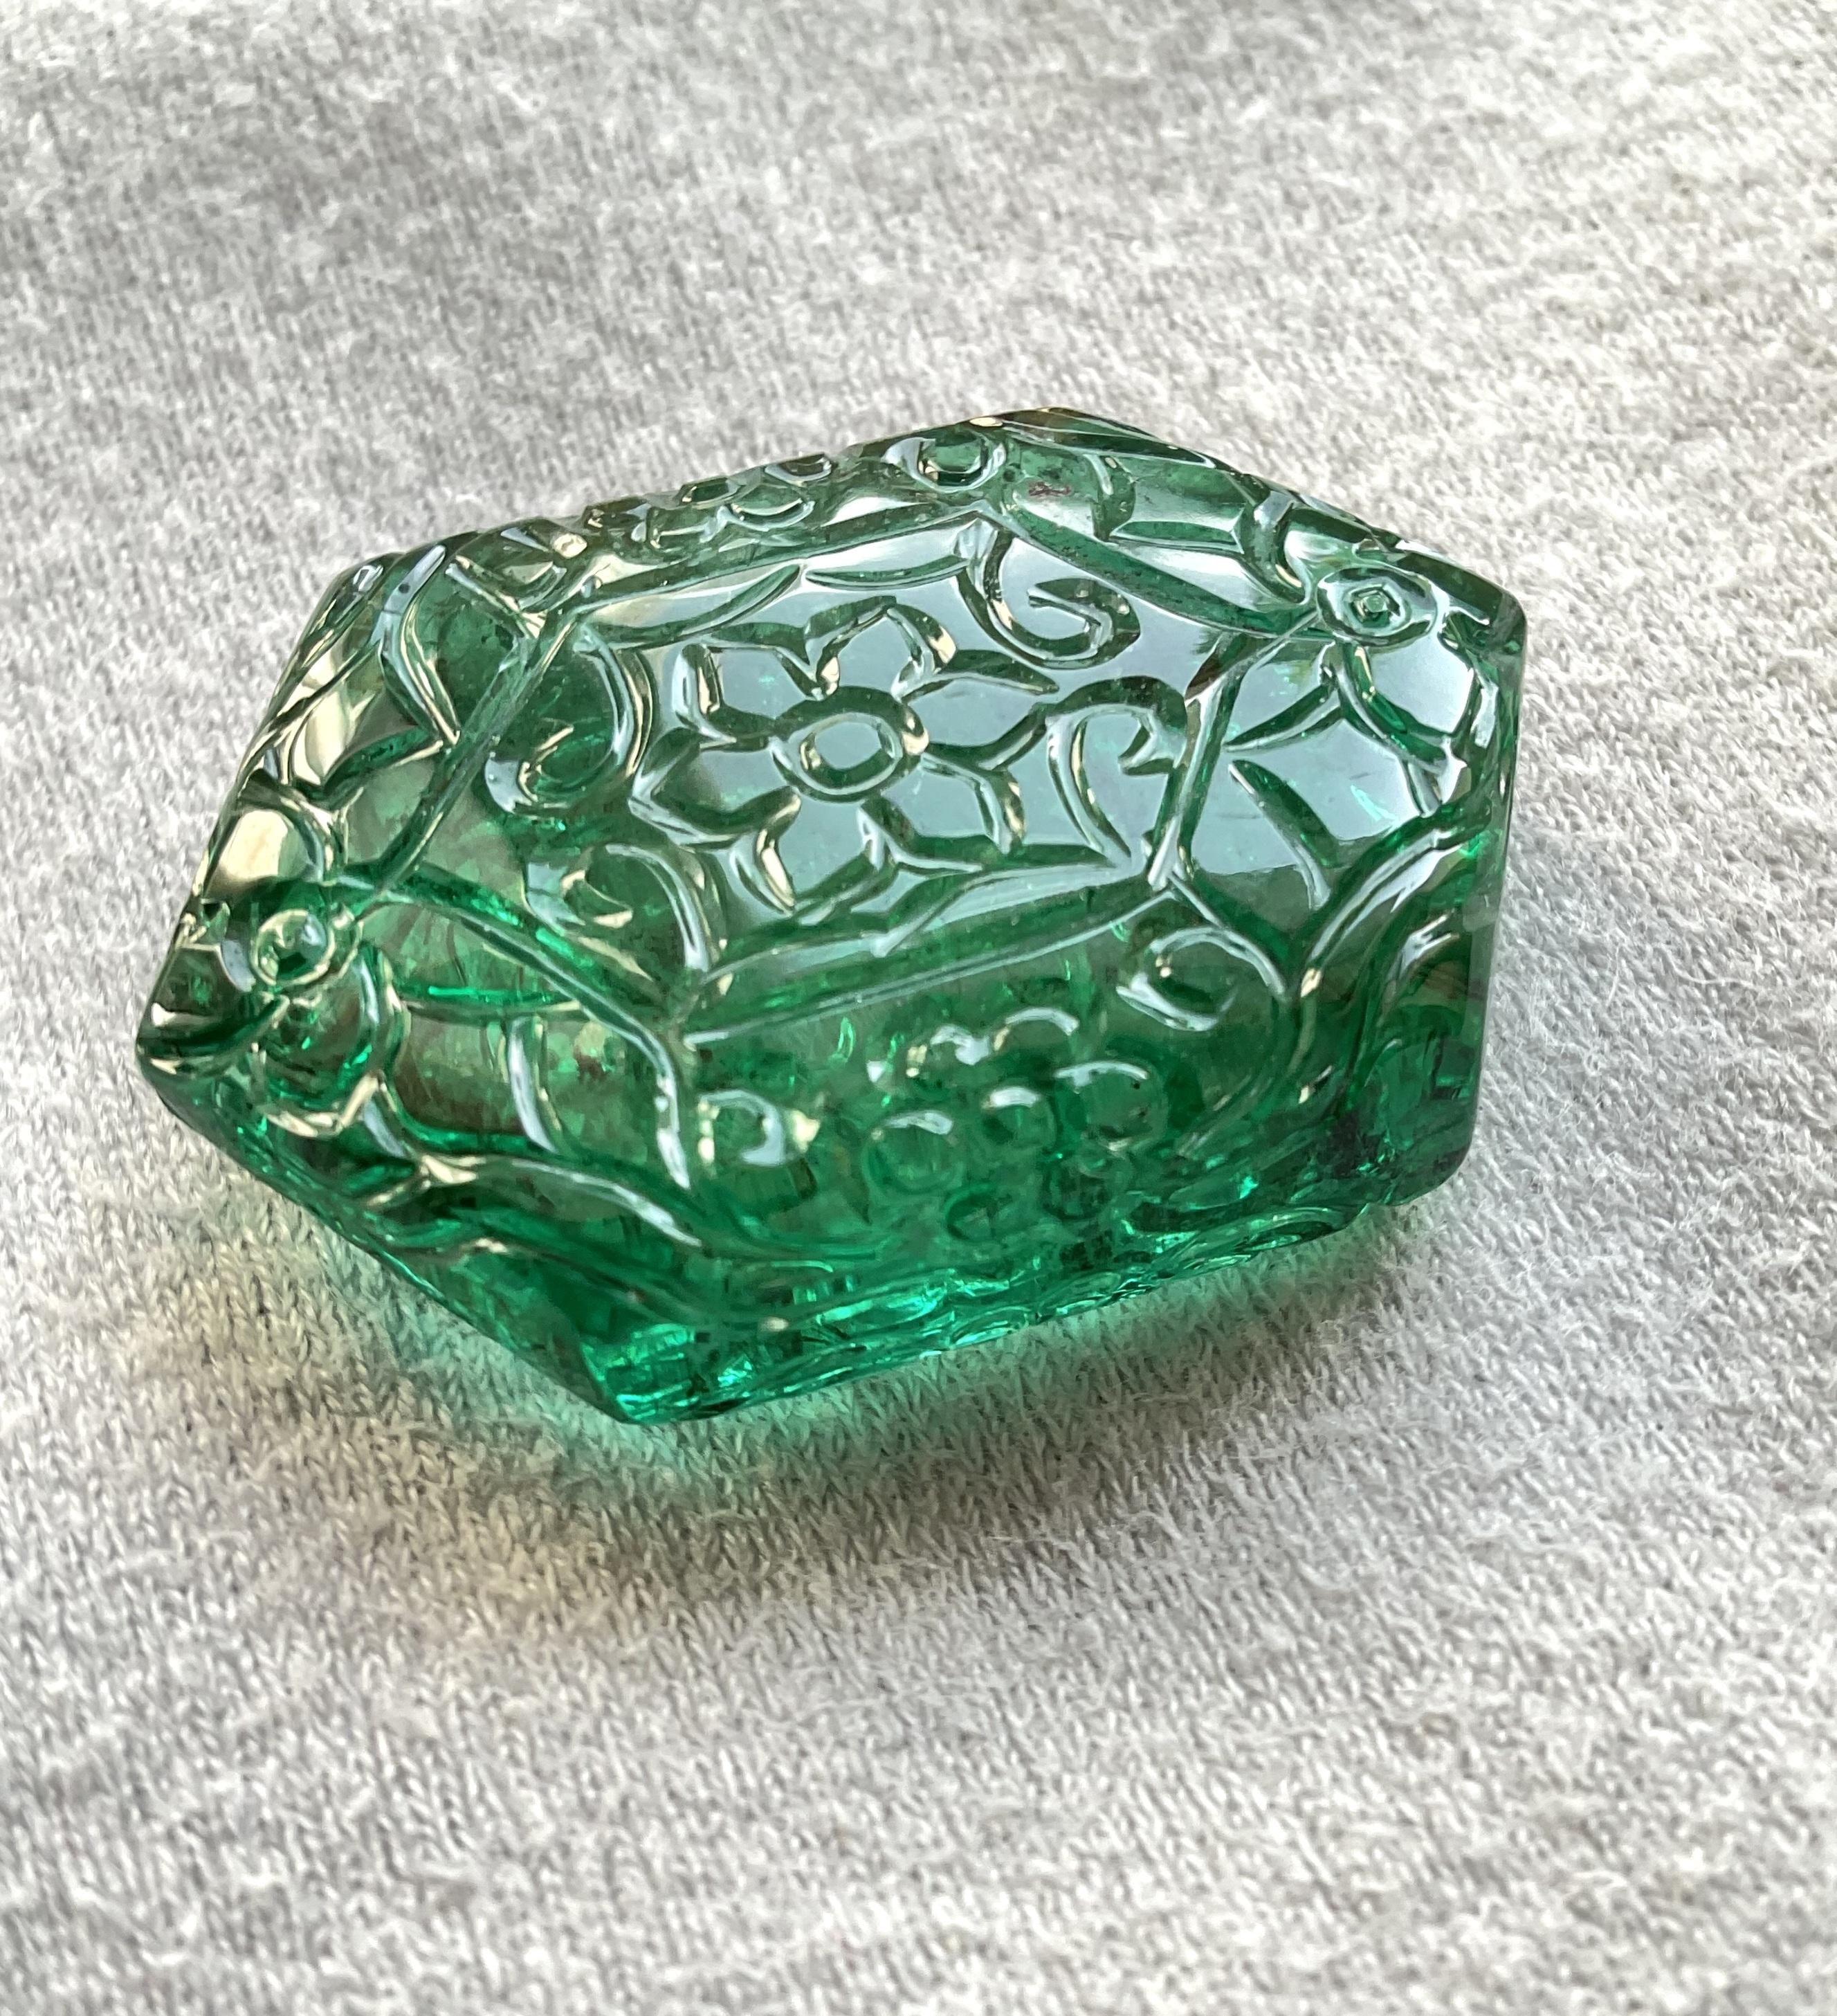 gem quality emerald